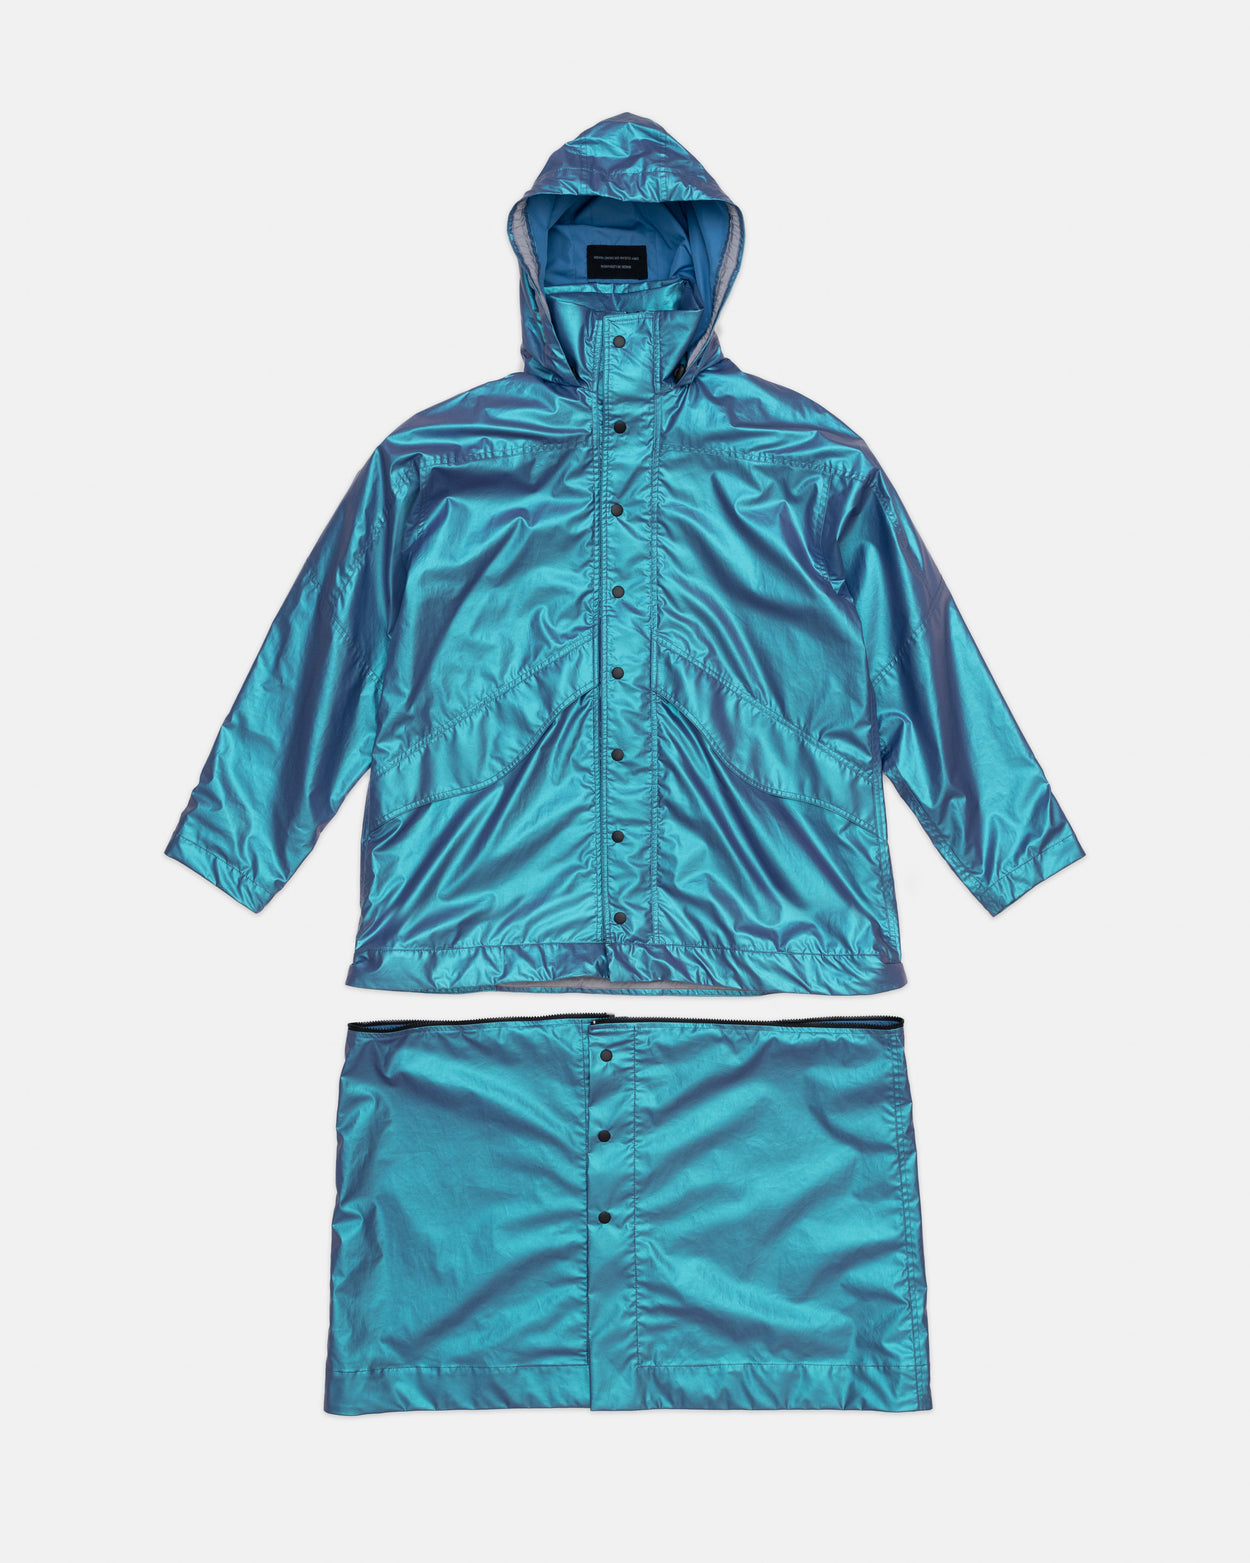 Glazed raincoat